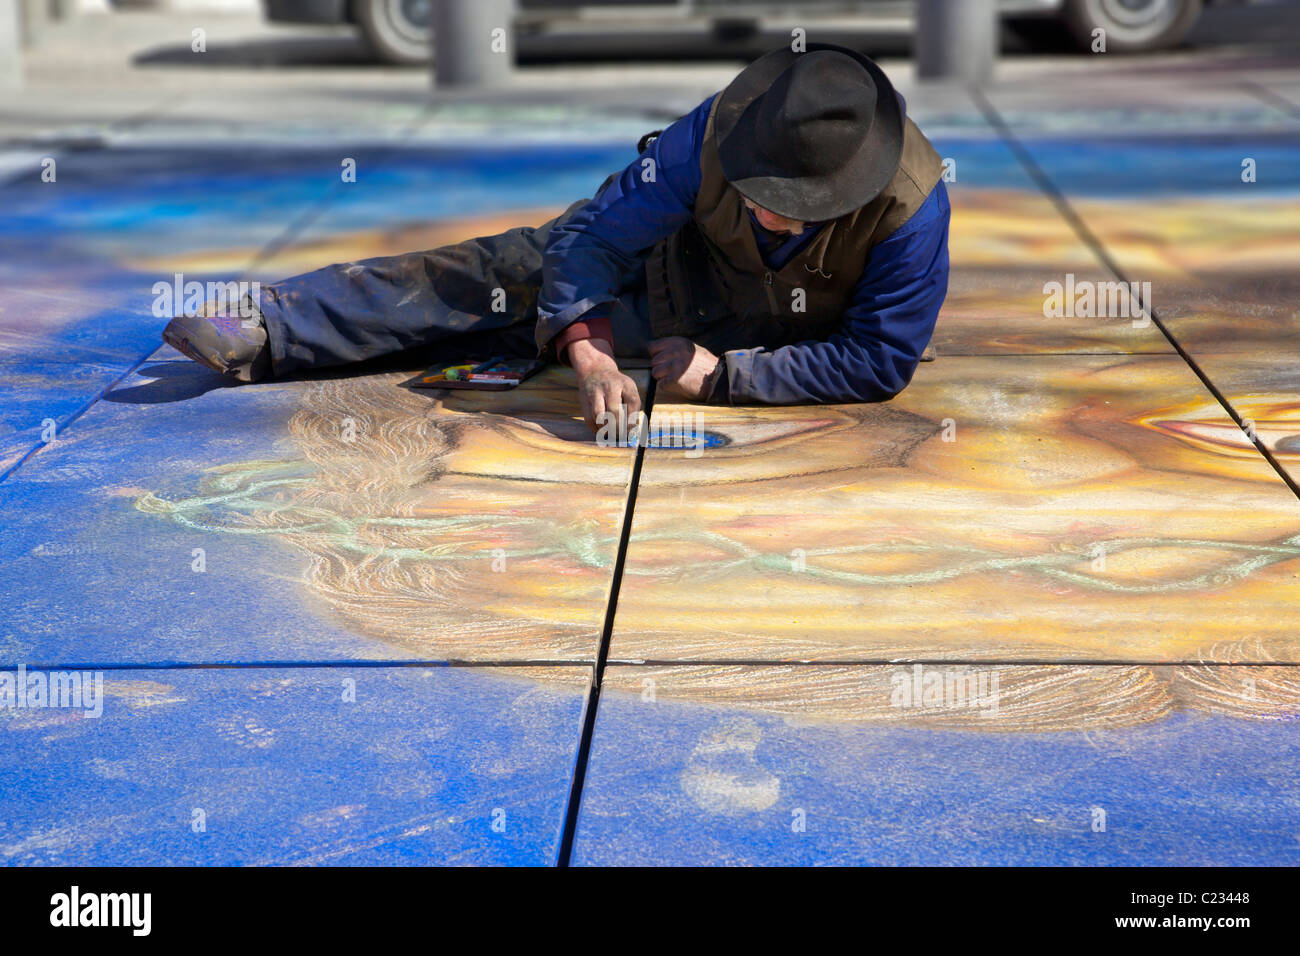 Un artista de calle París Francia trabaja en un mural / pintura / dibujo en un parque. Studio Lupica Foto de stock